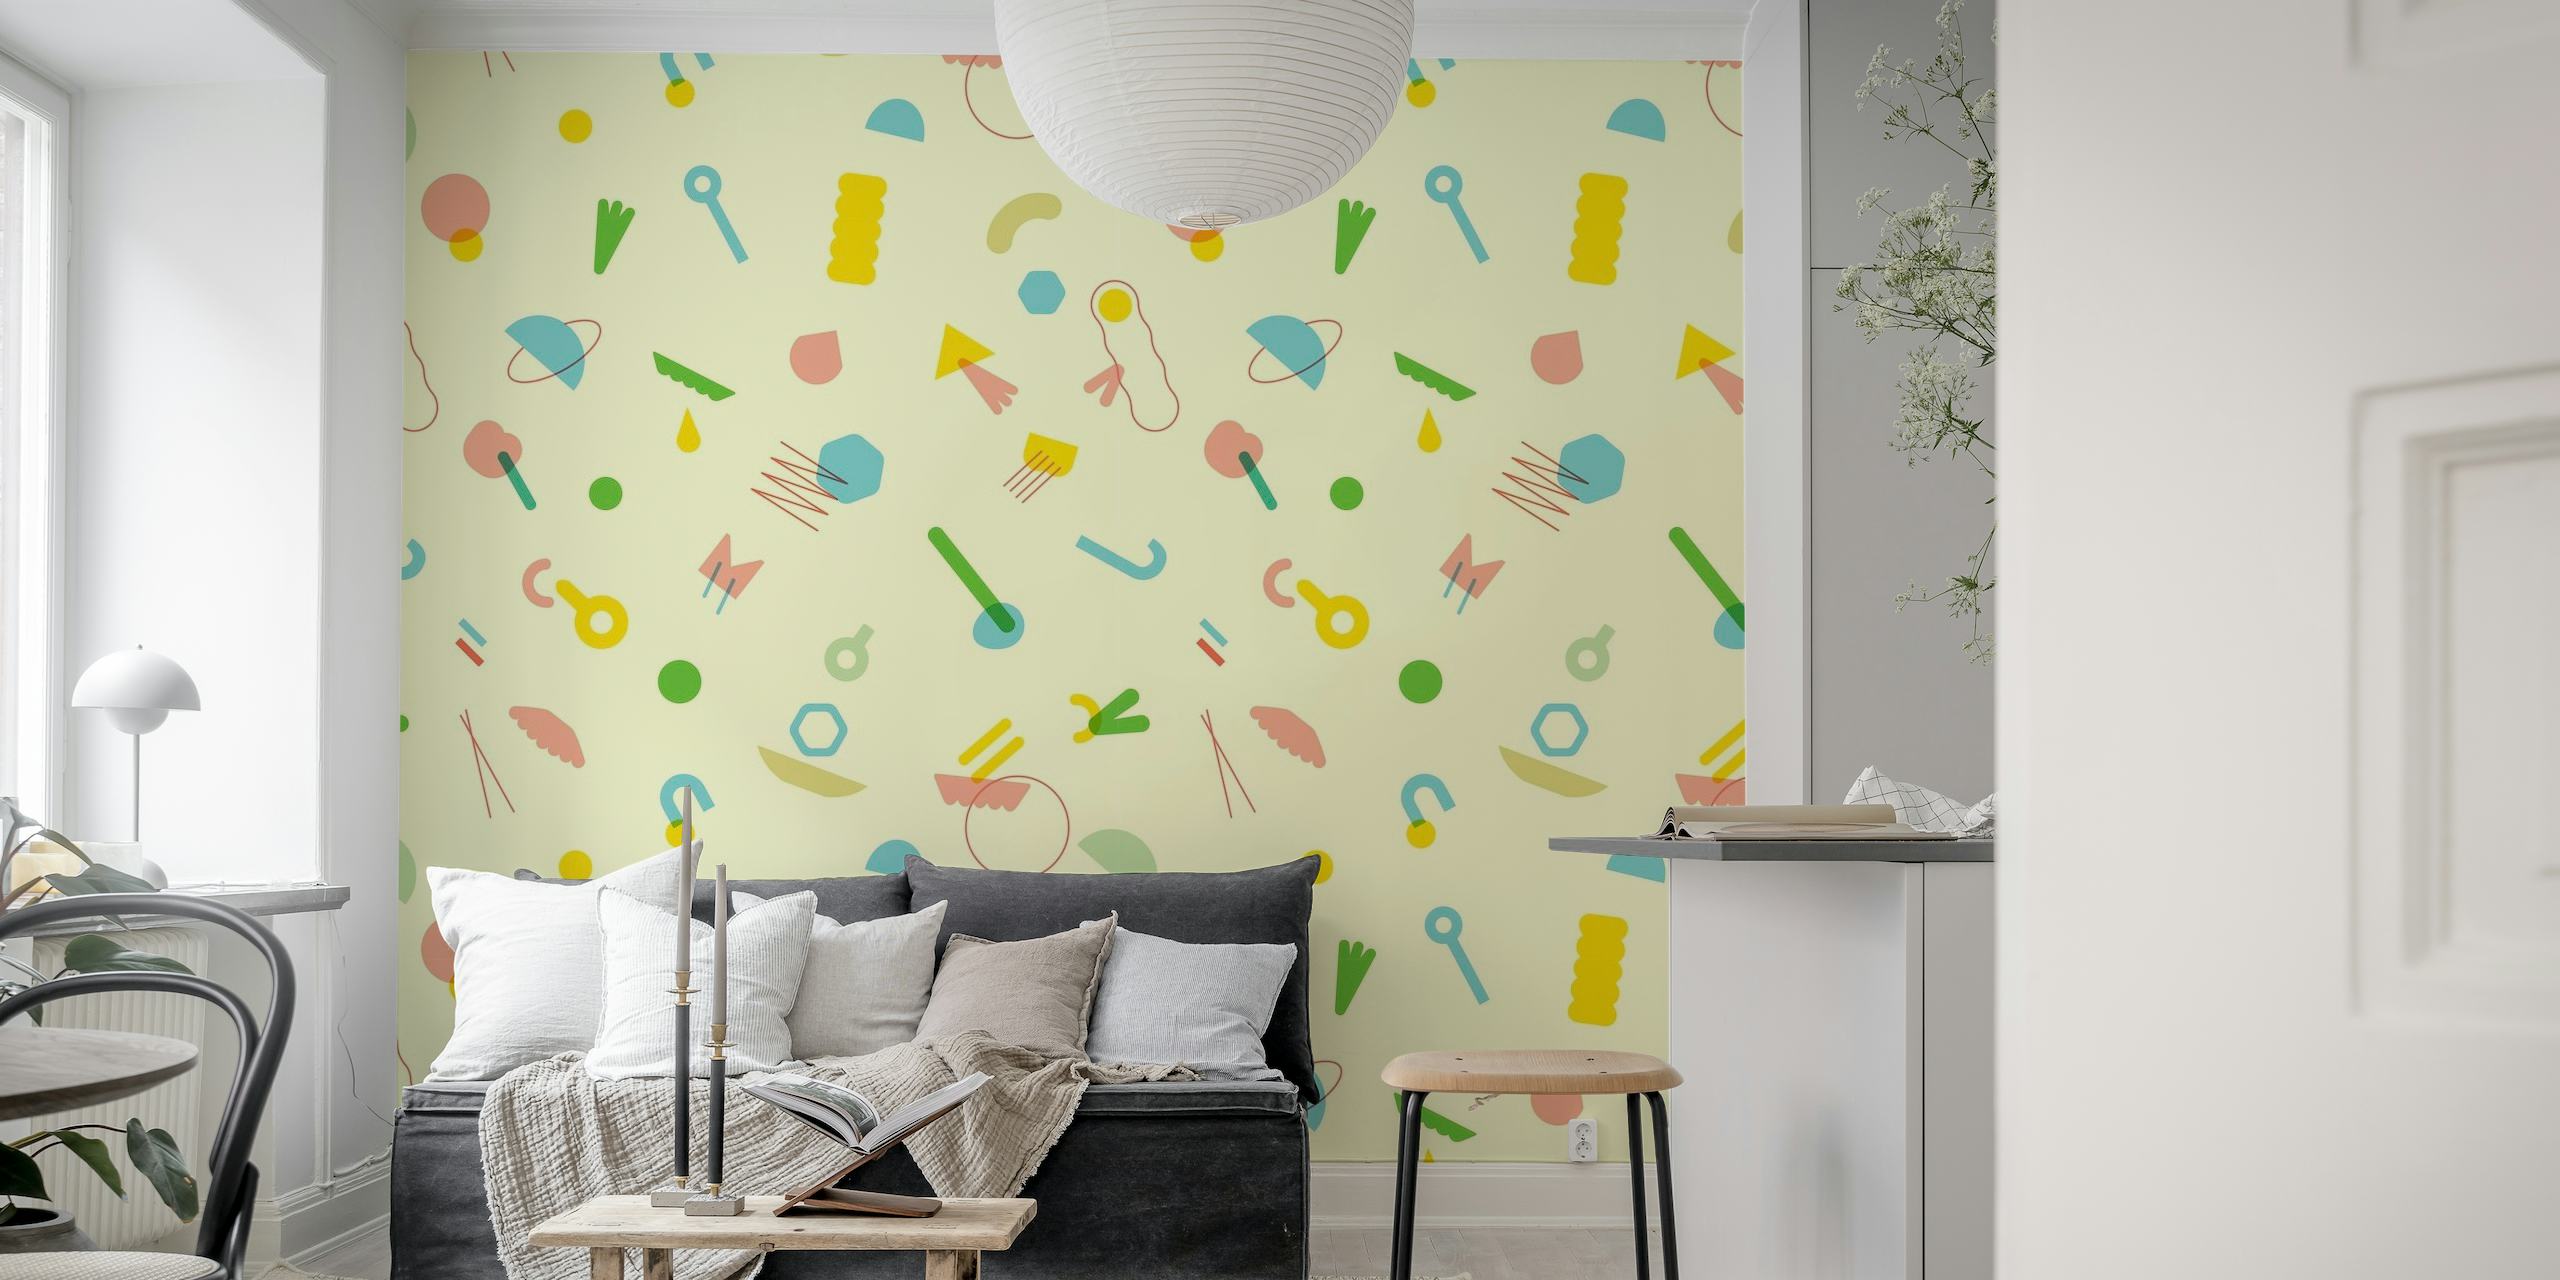 Papier peint mural sticker de figures abstraites colorées pour décoration intérieure